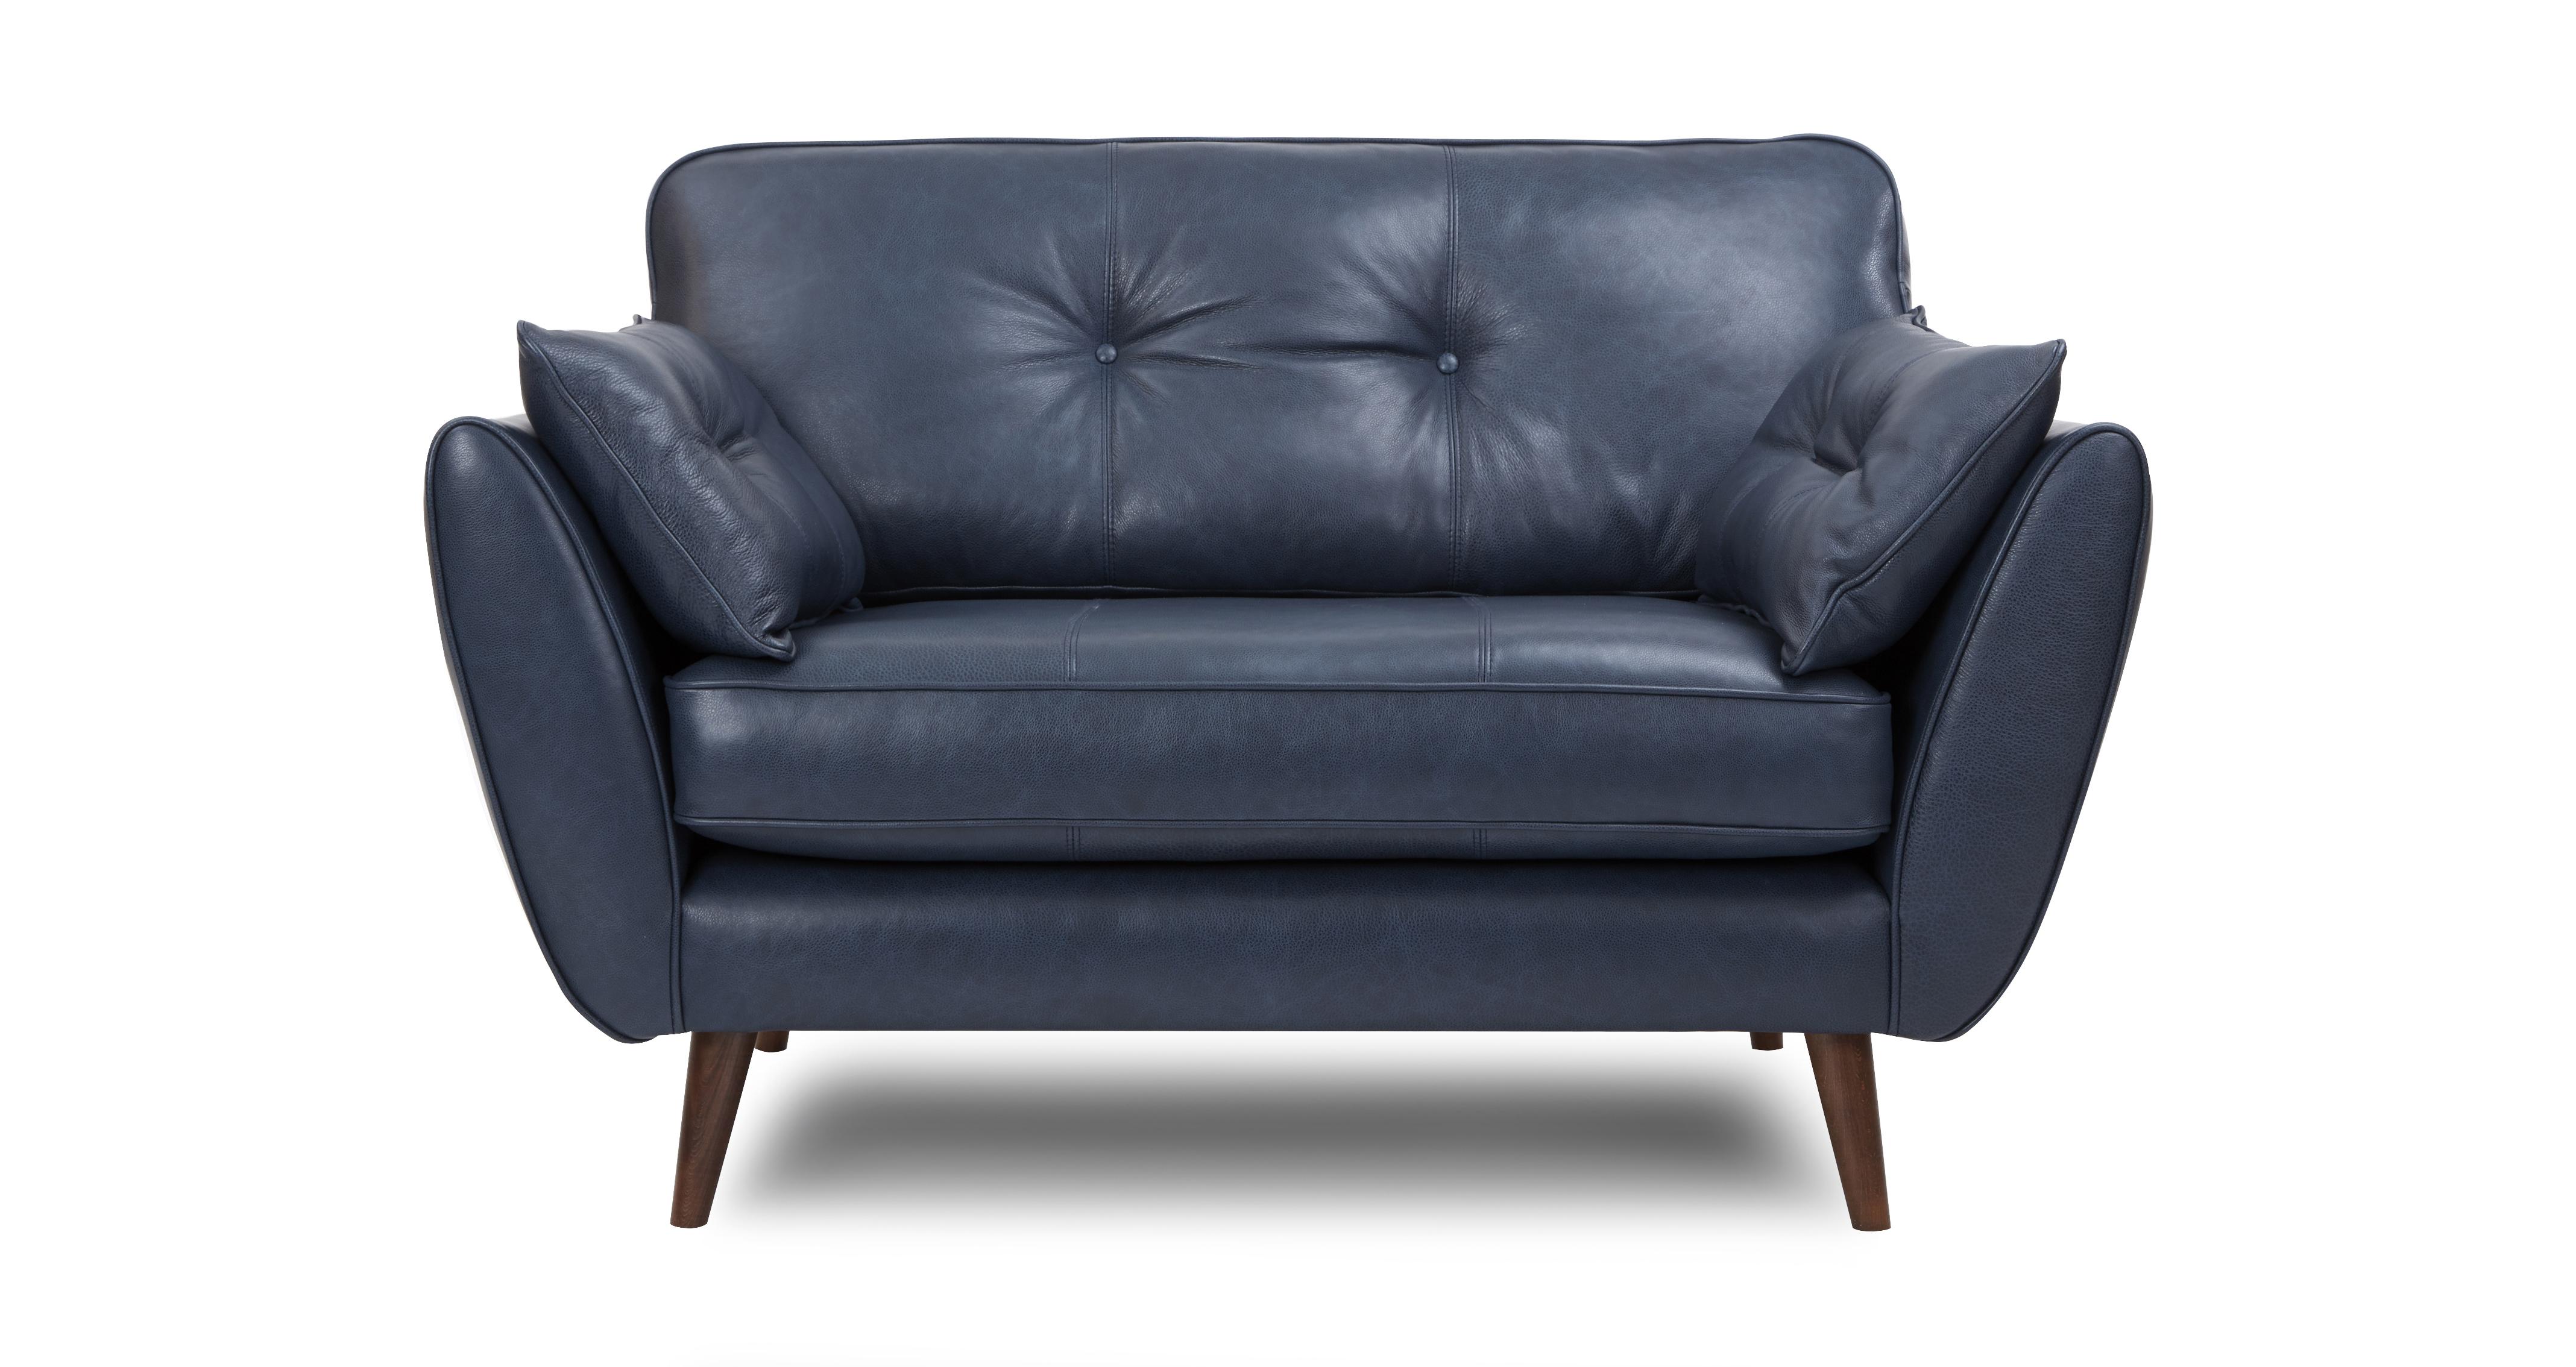 dfs zinc leather sofa review